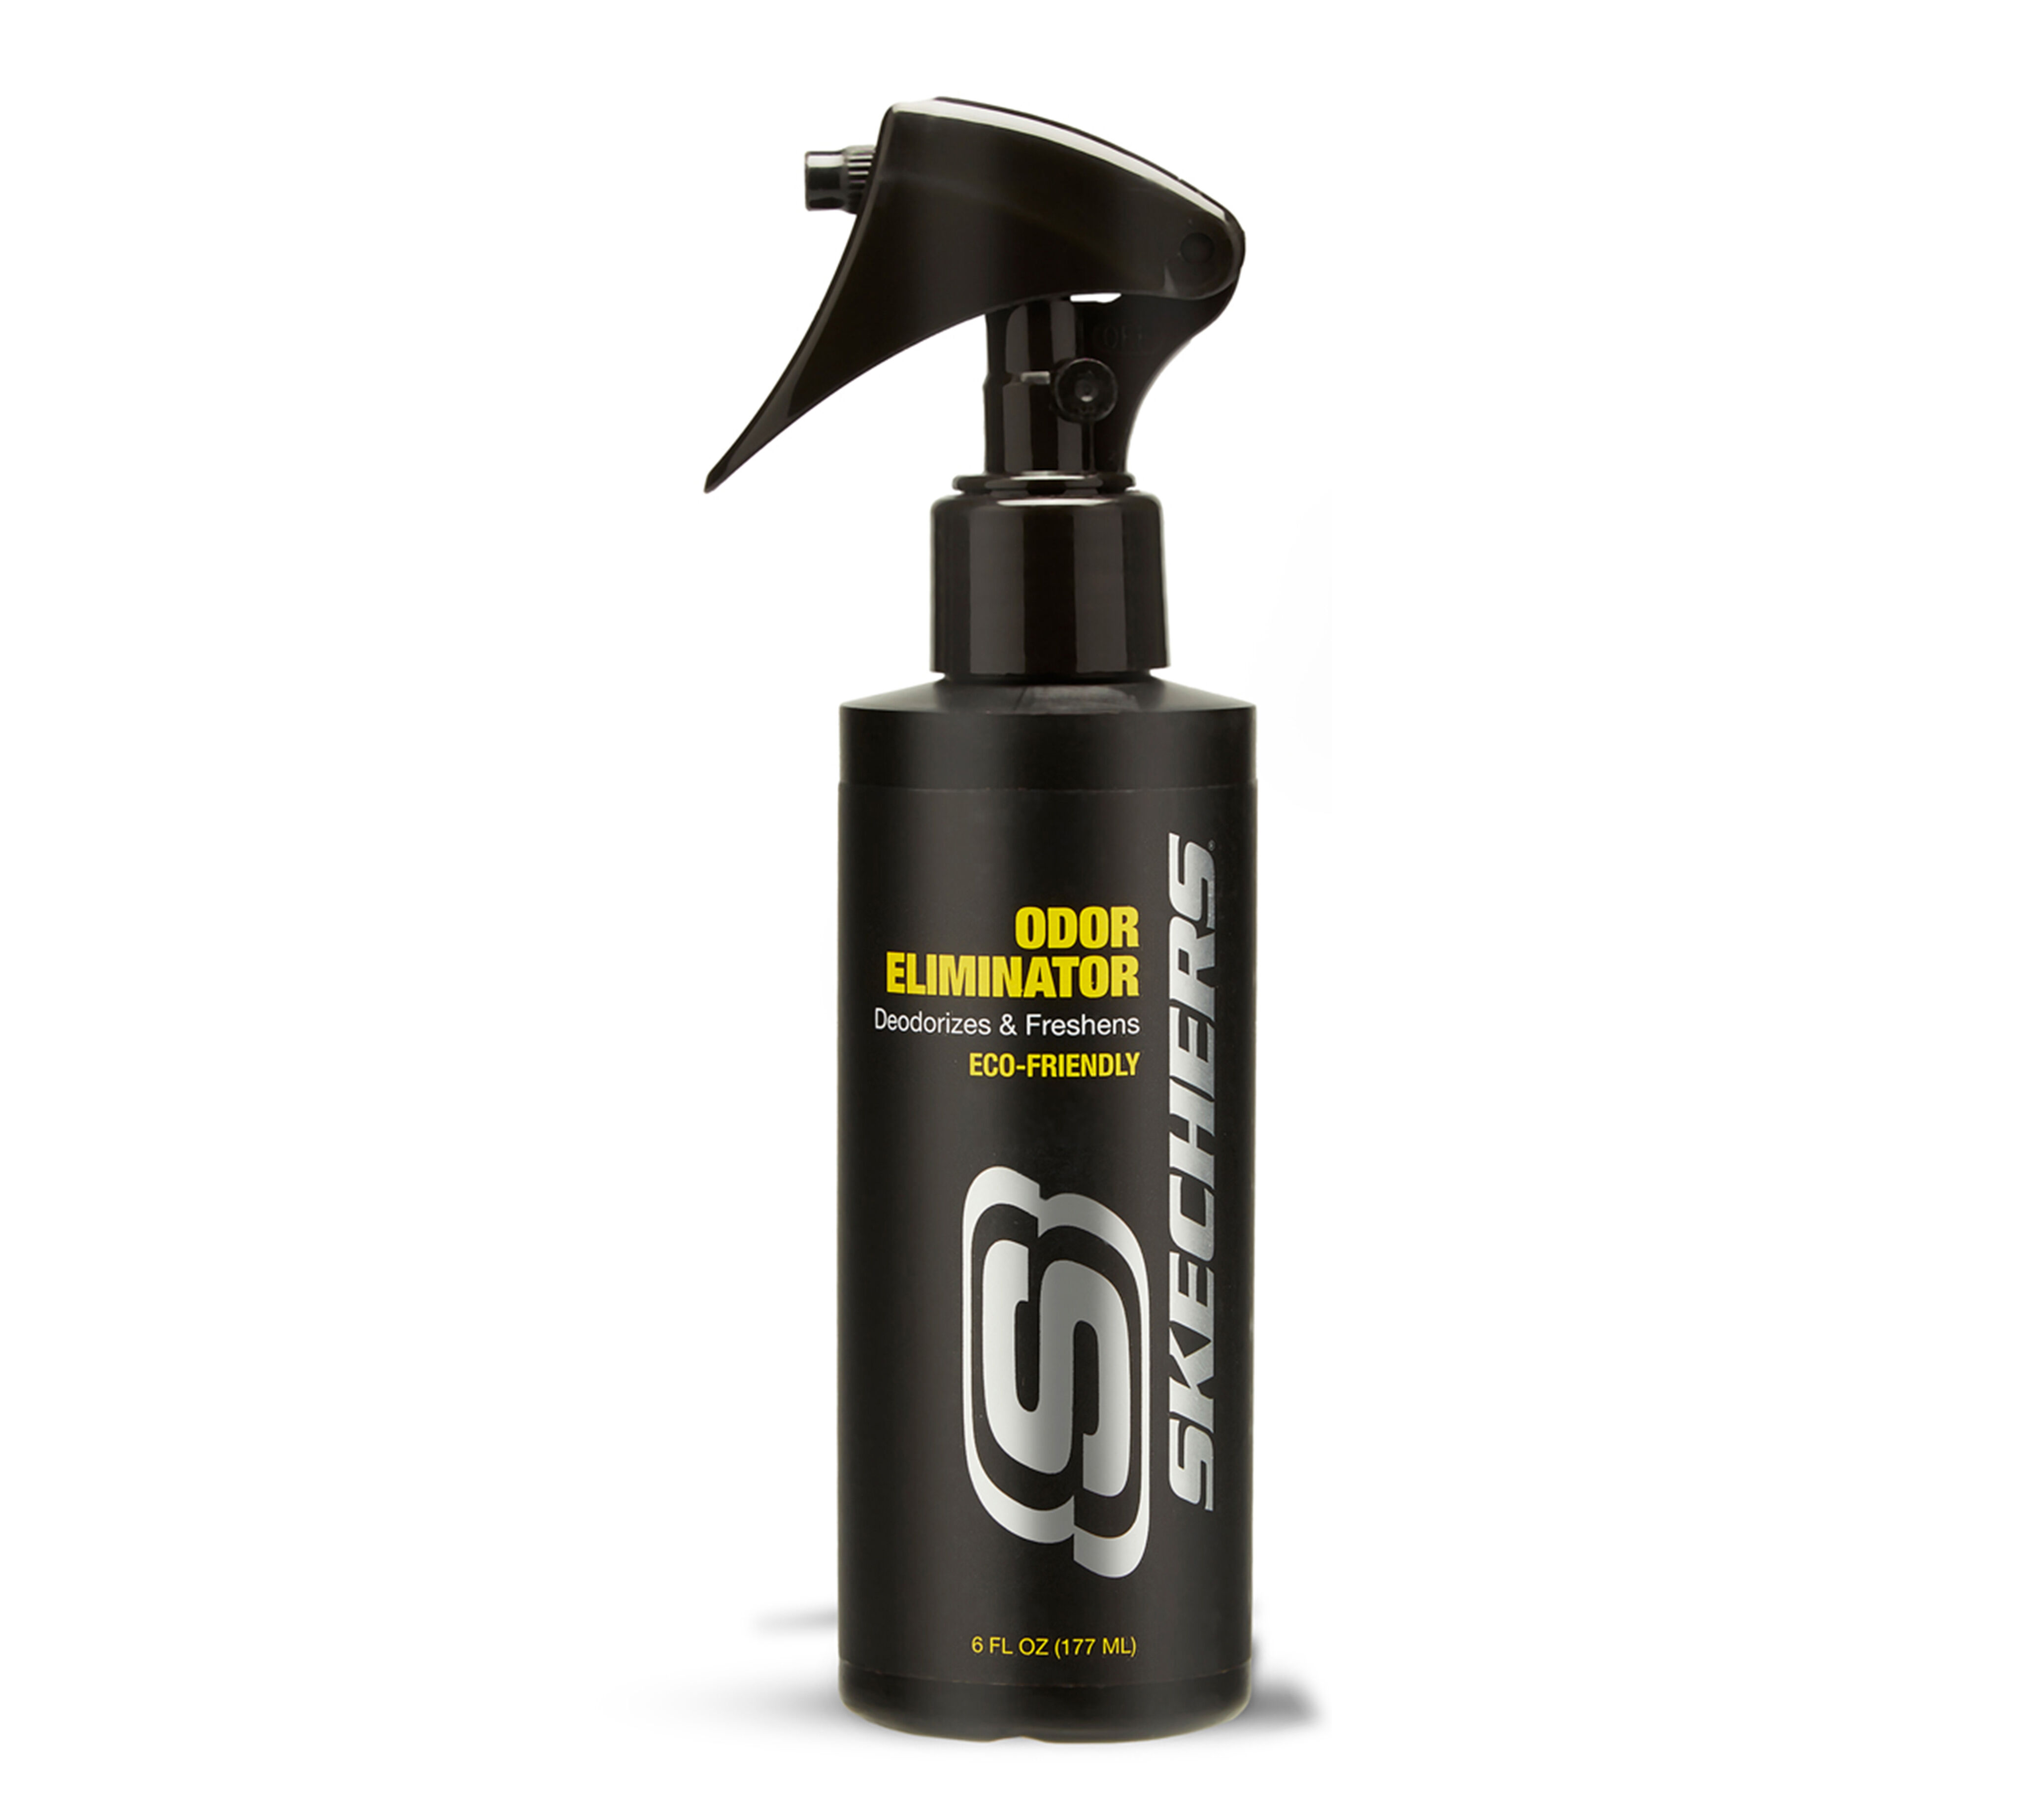 skechers odor eliminator spray review